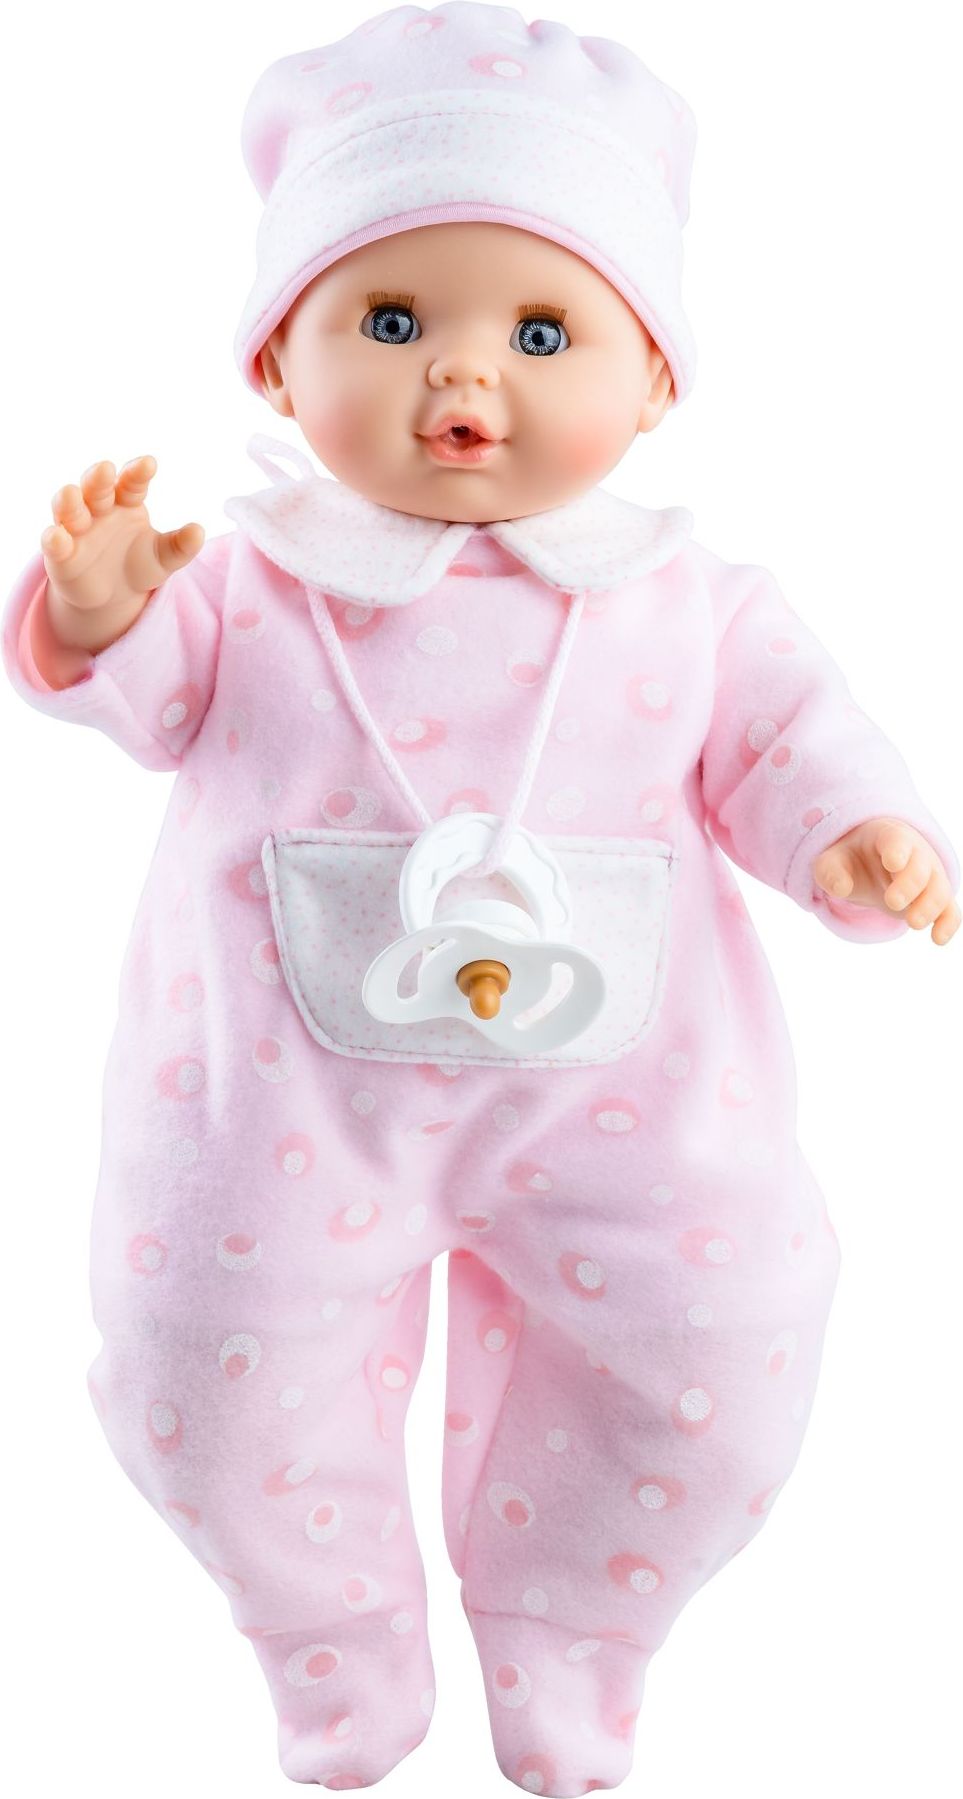 Realistické miminko - holčička Sonia v růžovém od firmy Paola Reina - obrázek 1